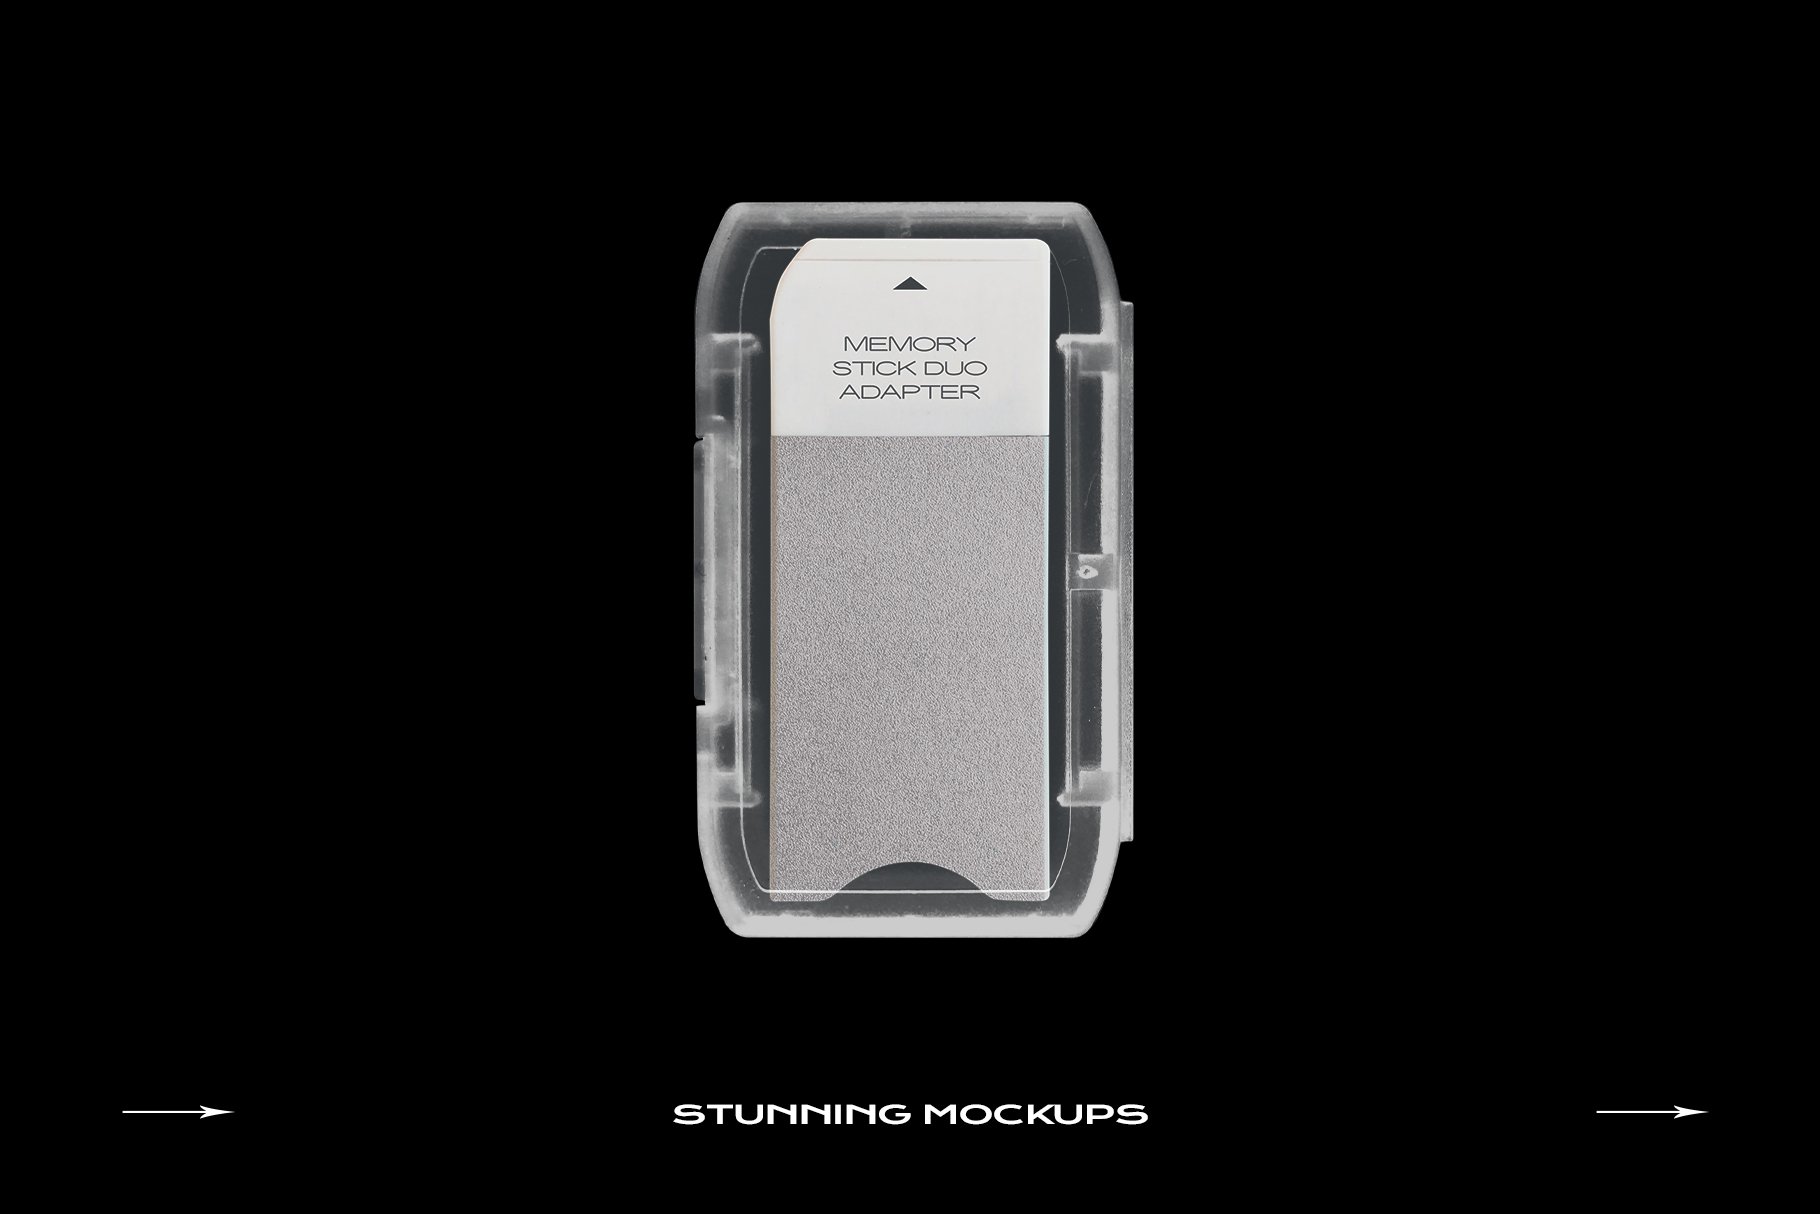 超酷复古电脑移动存储卡SD卡塑料包装盒贴纸样机Ps设计素材套装Memory Card Mockup Template SD